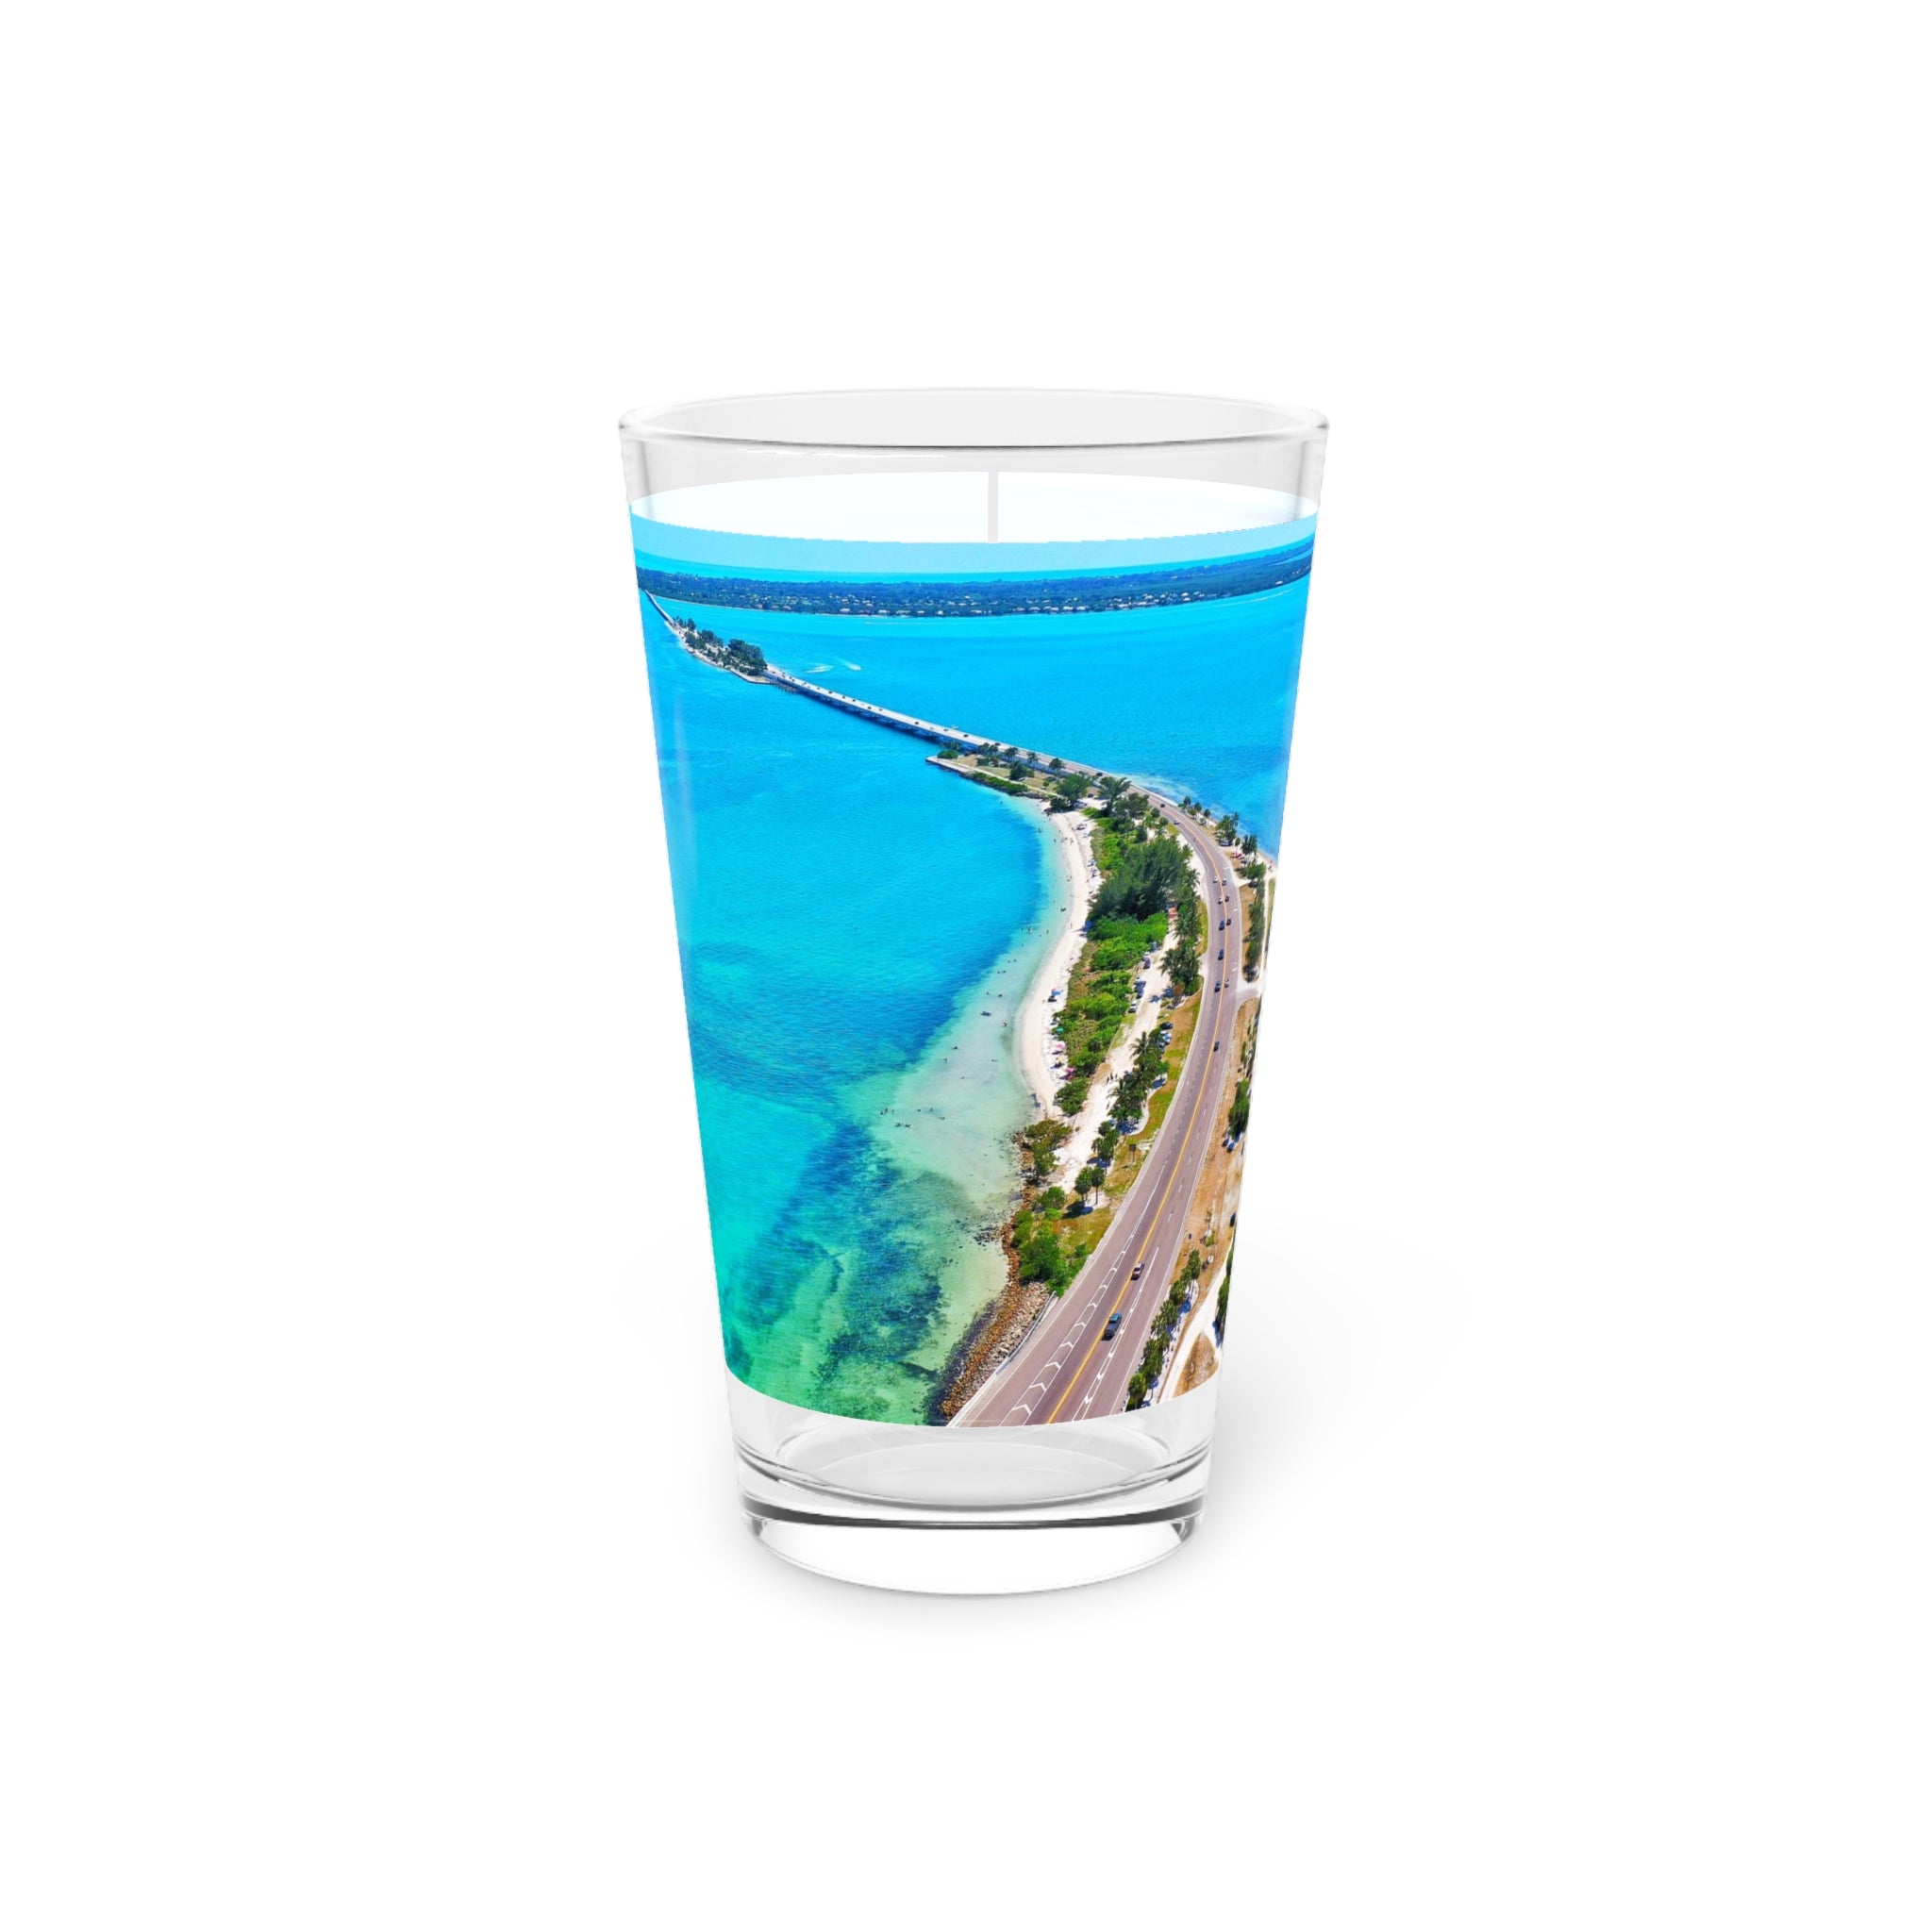 Sanibel Causeway Pint Glass, 16oz